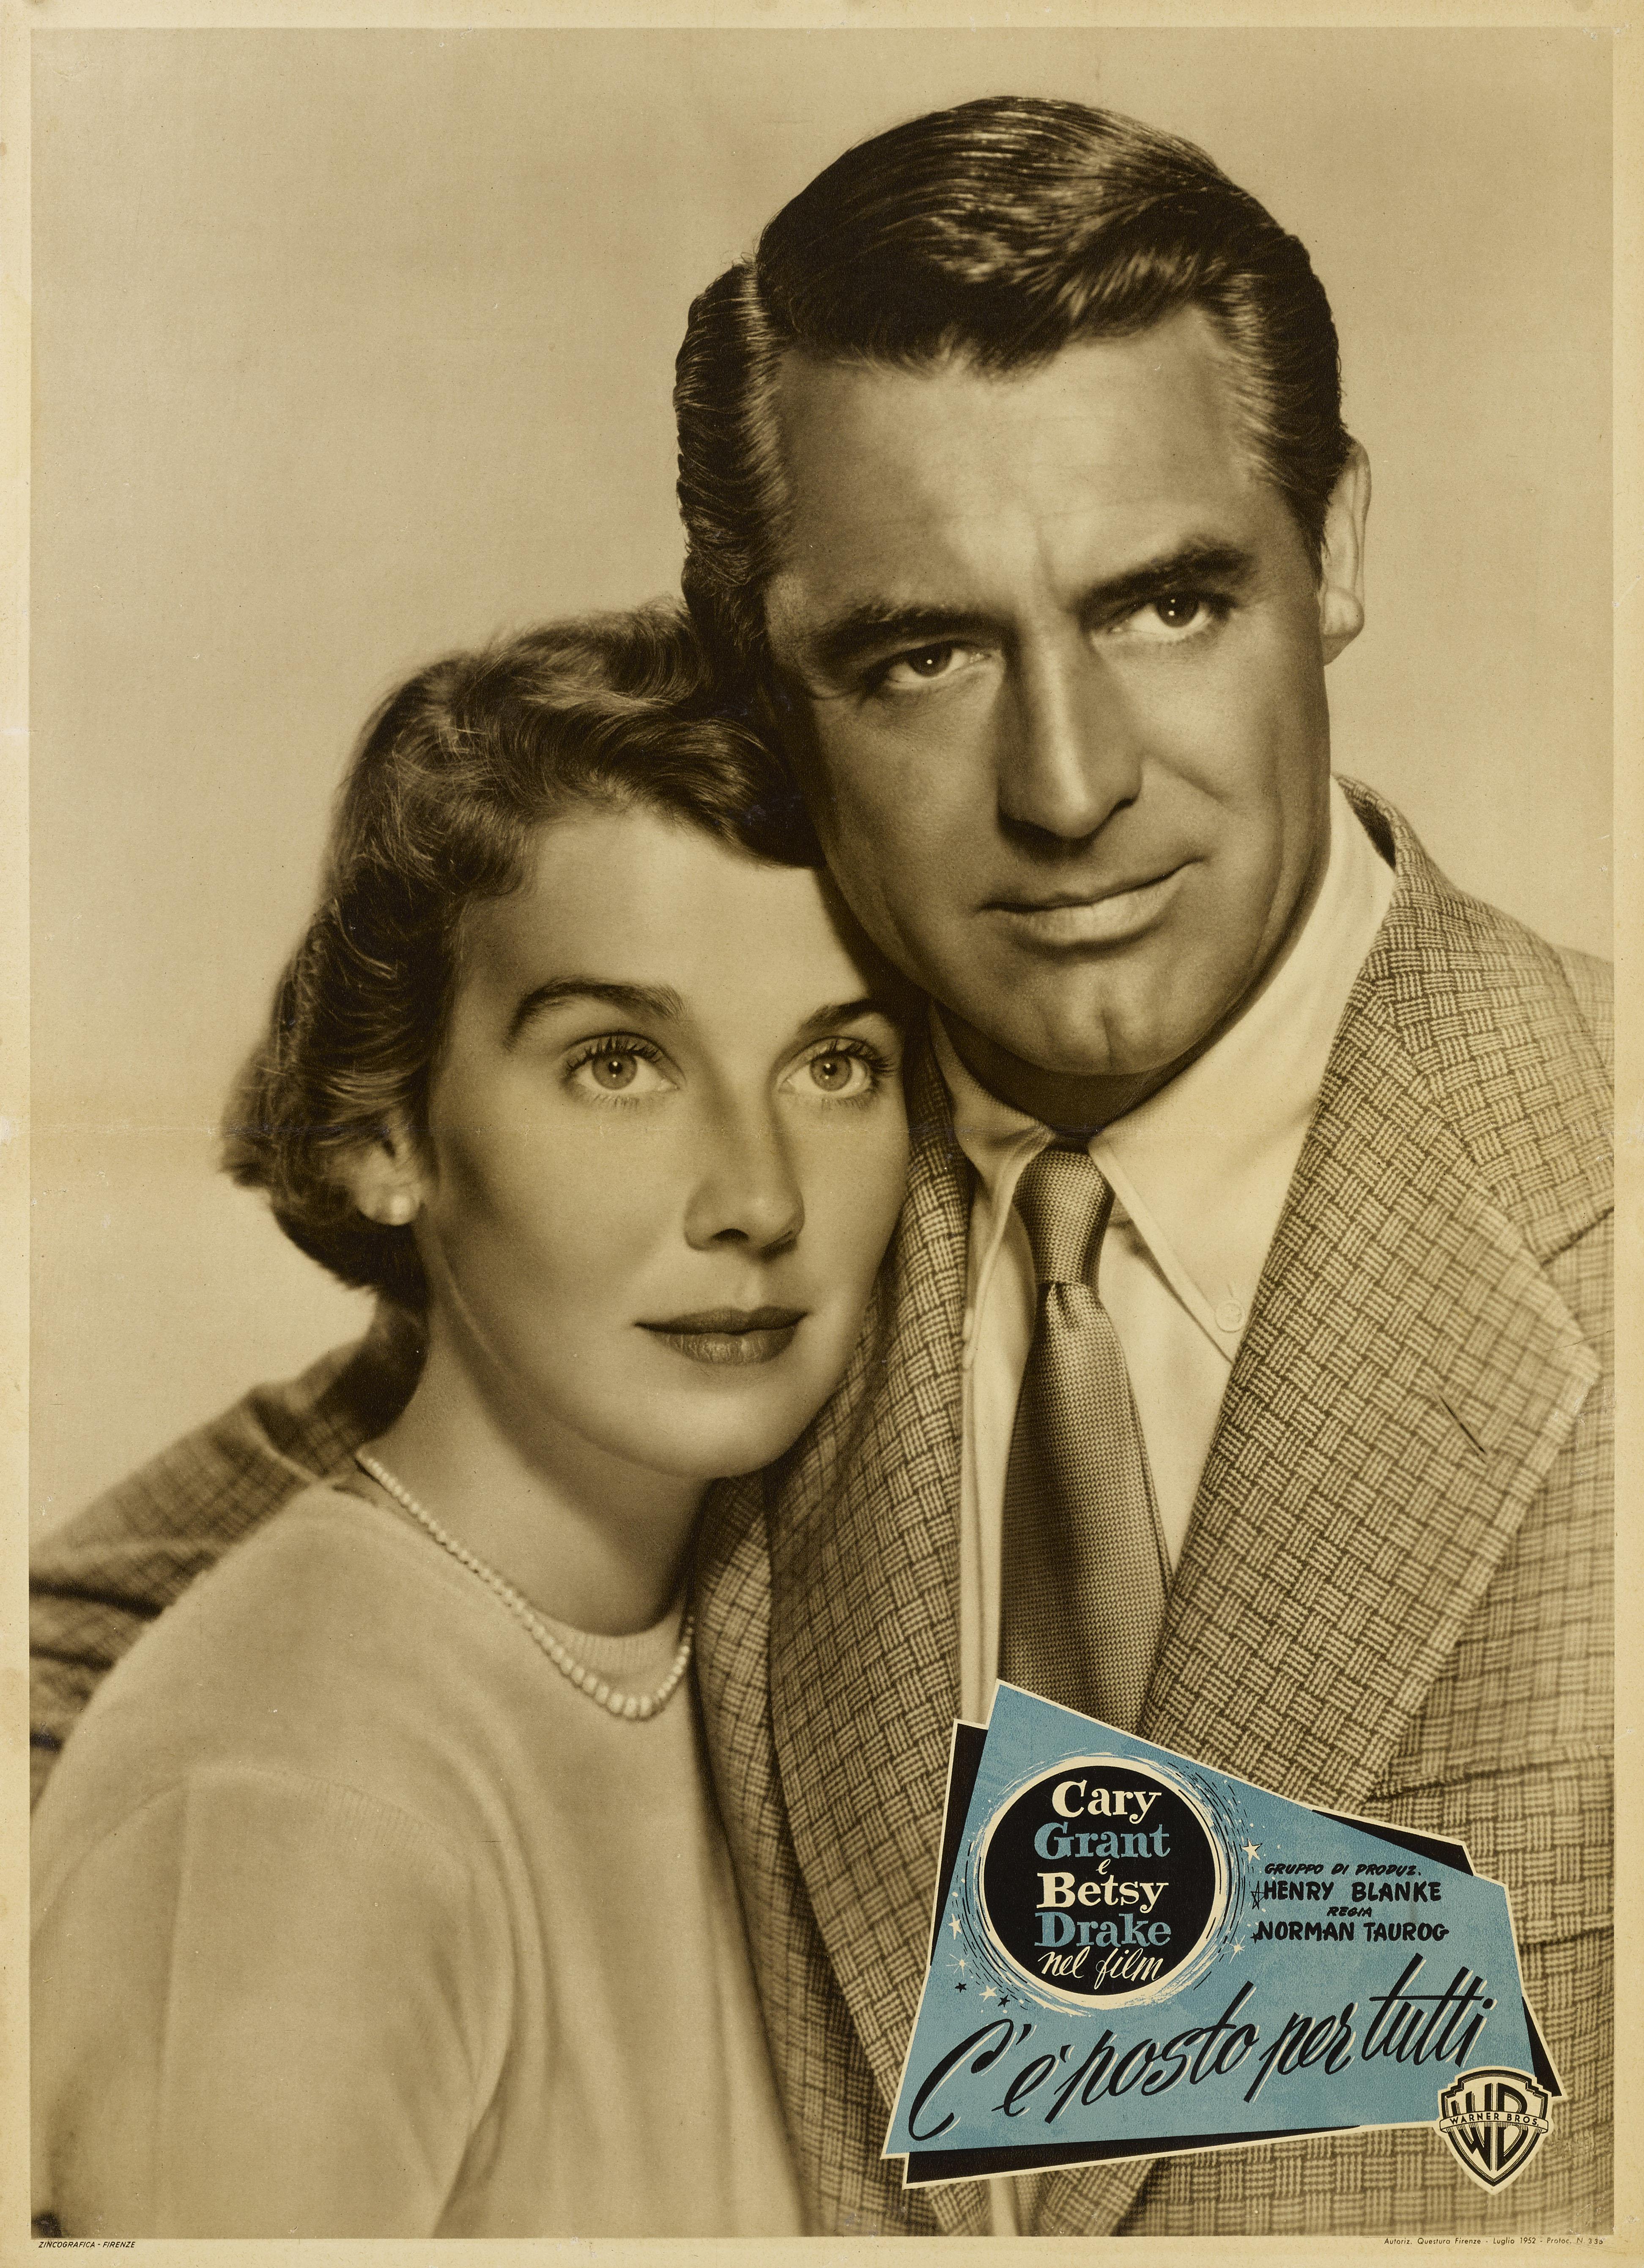 Originales italienisches Filmplakat für Room for One More 1952.

Diese Komödie wurde von Norman Taurog inszeniert und mit Cary Grant und Betsy Drake in den Hauptrollen gedreht.
Das Plakat ist in ausgezeichnetem Zustand, mit nur einer kleinen